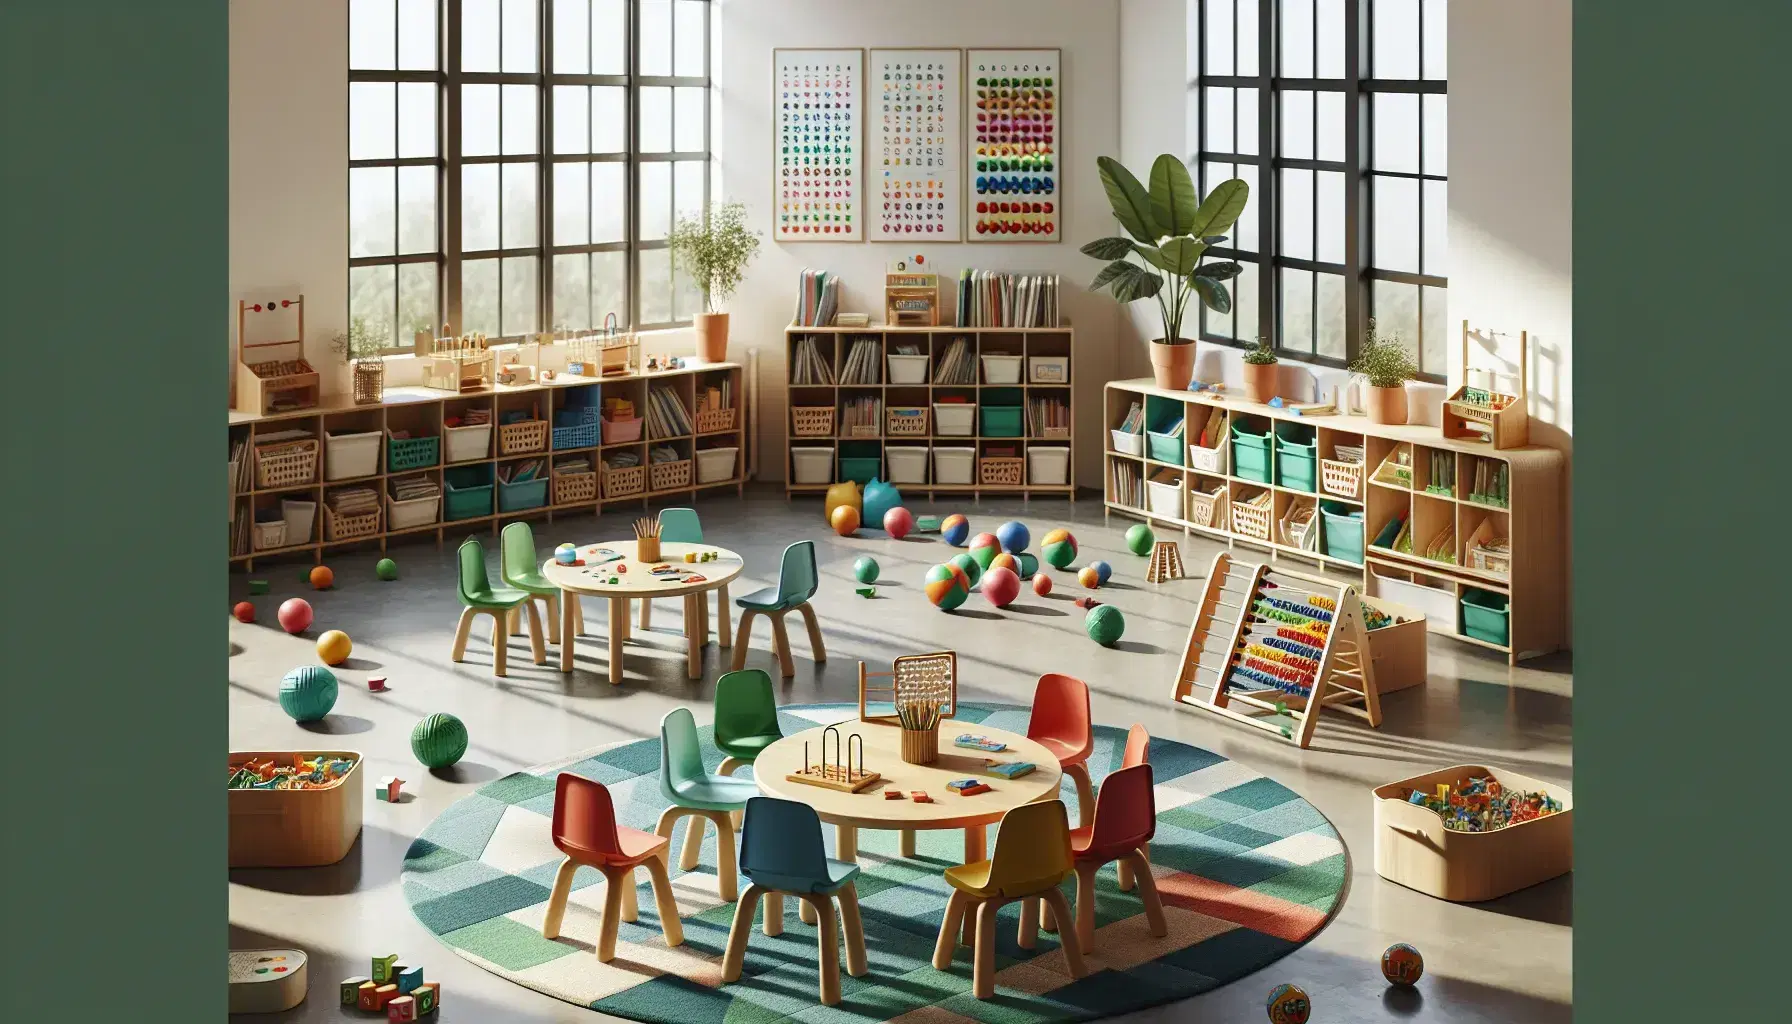 Aula escolar luminosa con mesas redondas y sillas de colores, materiales educativos, estantería con libros y juguetes, y dibujos infantiles en la pared.